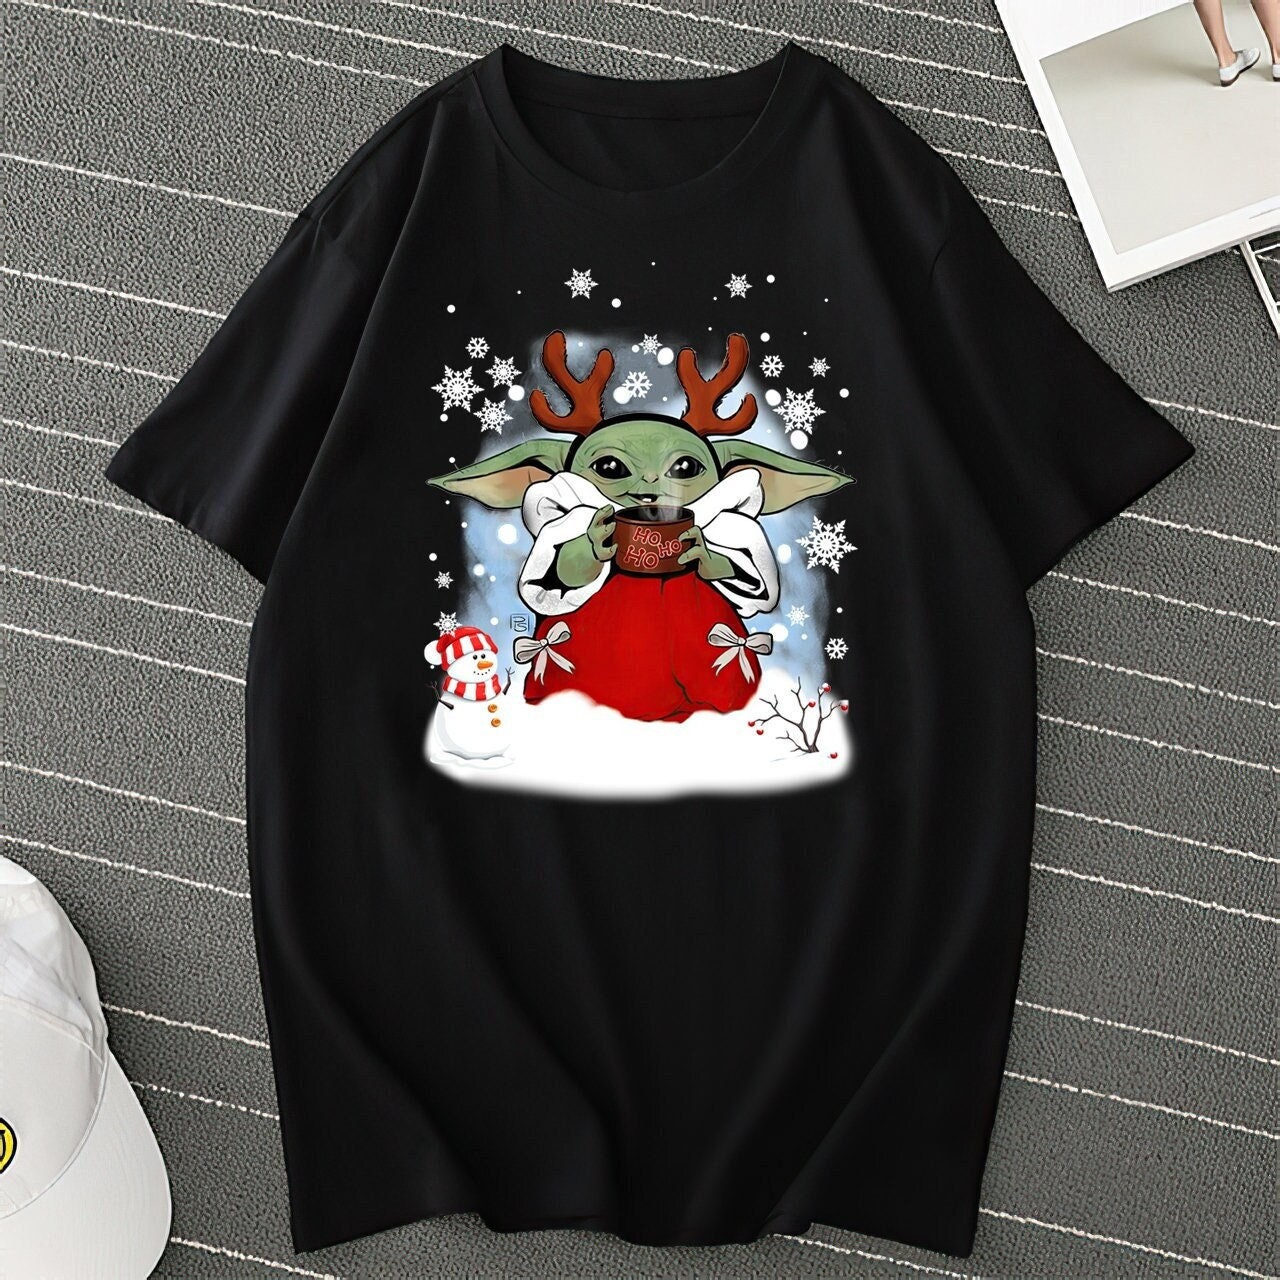 Star Wars Christmas Shirt, Christmas Coffee shirt